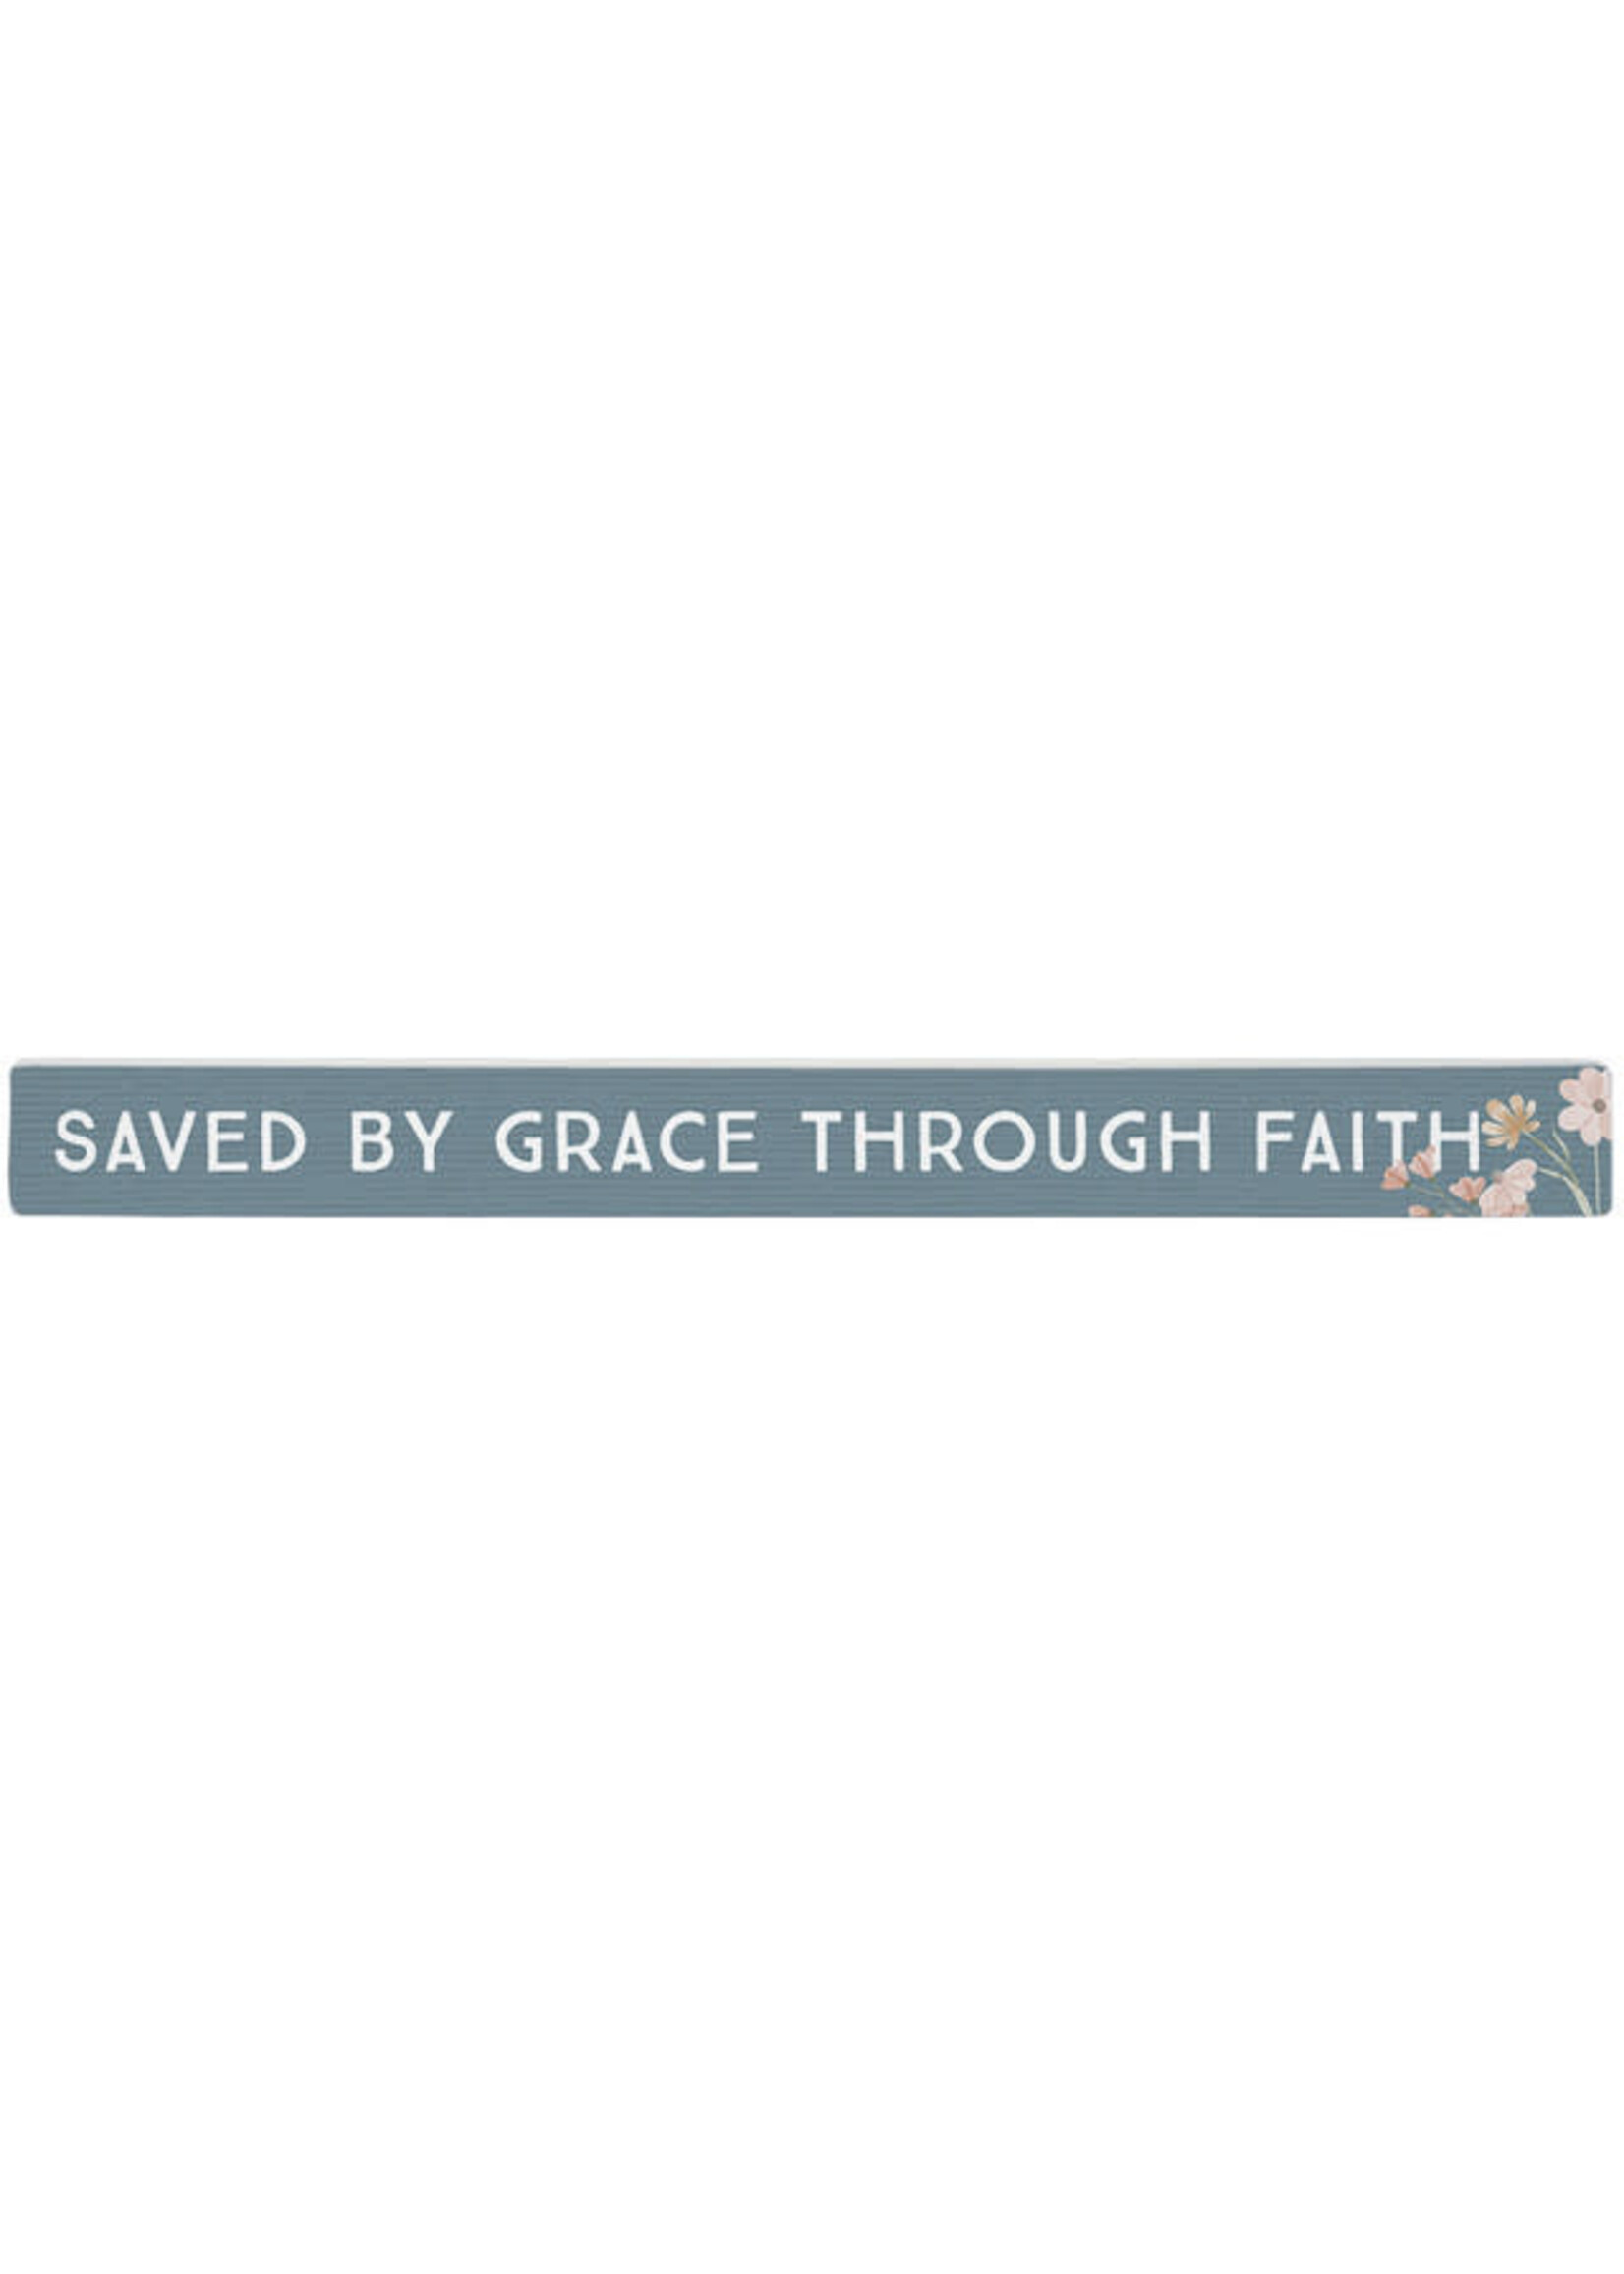 Grace Through Faith